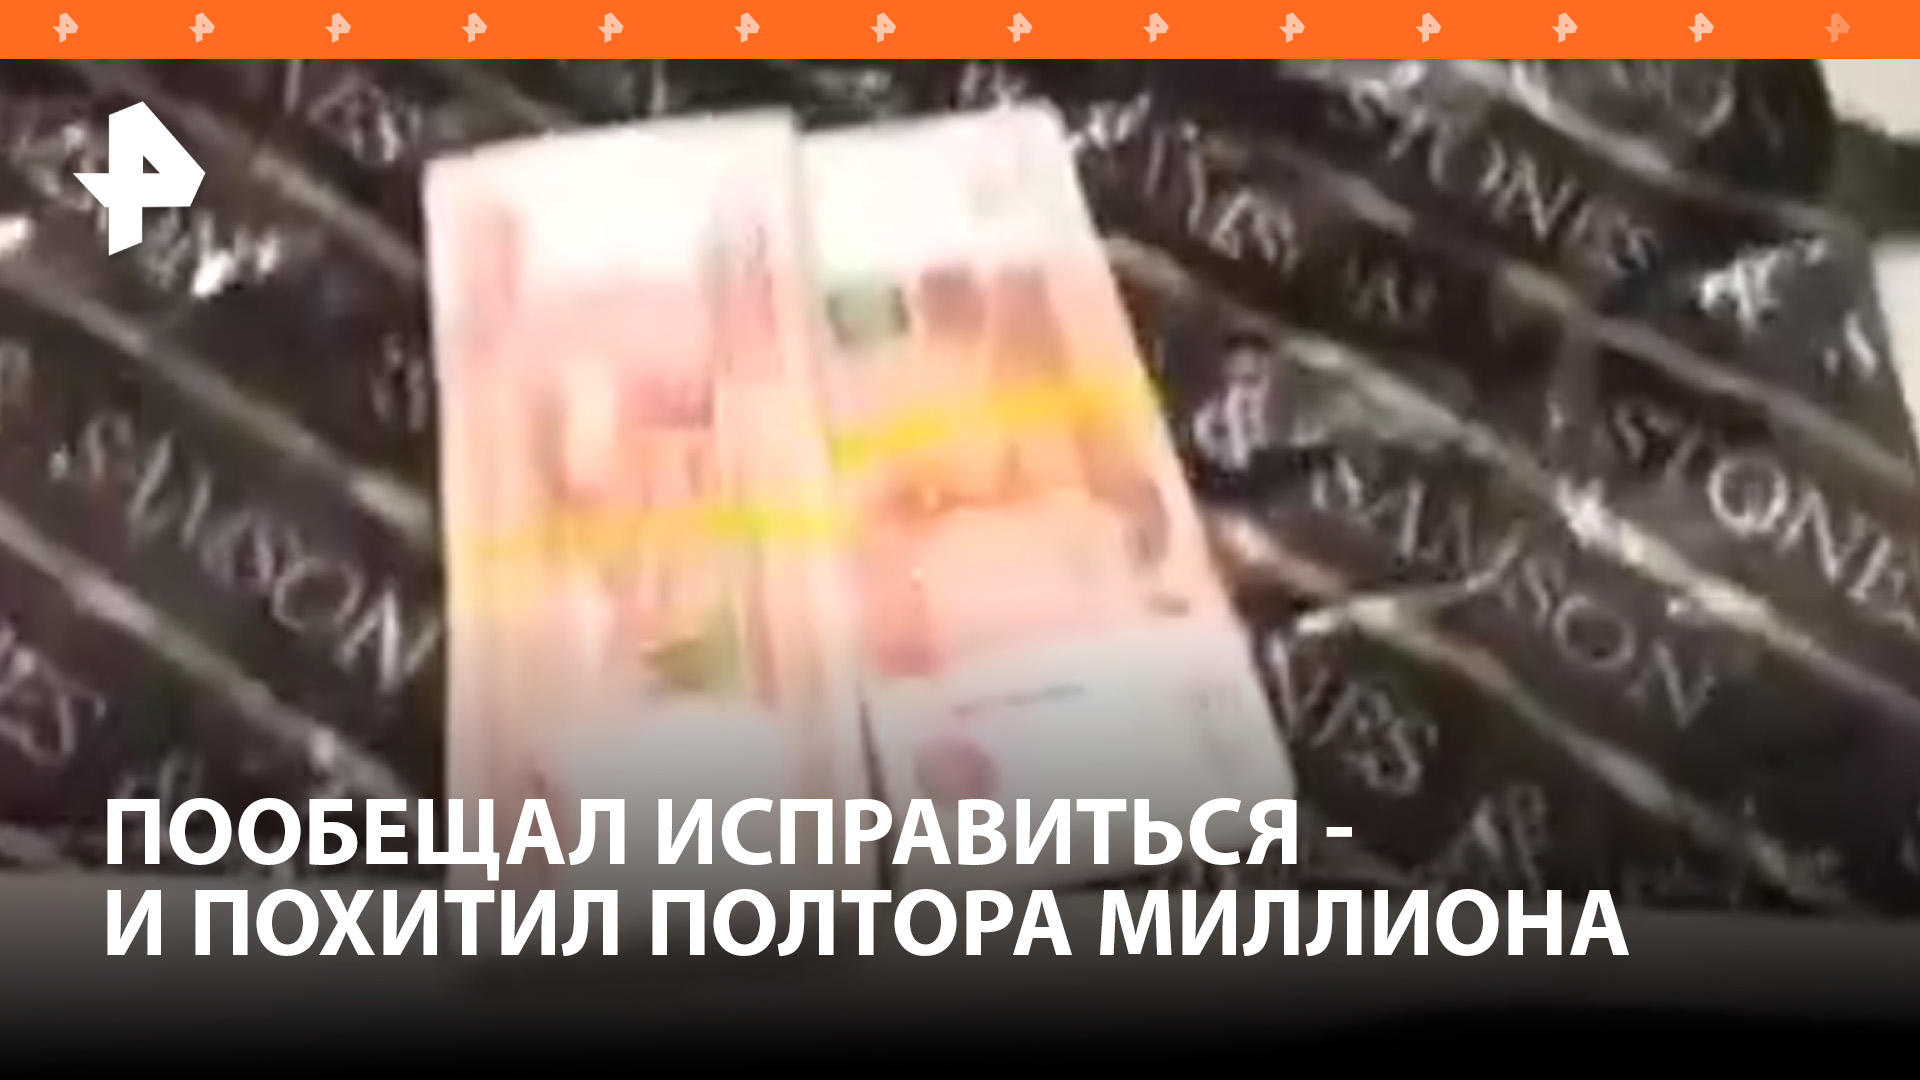 "Начать все с чистого листа": попытался исправиться - и украл полтора миллиона рублей